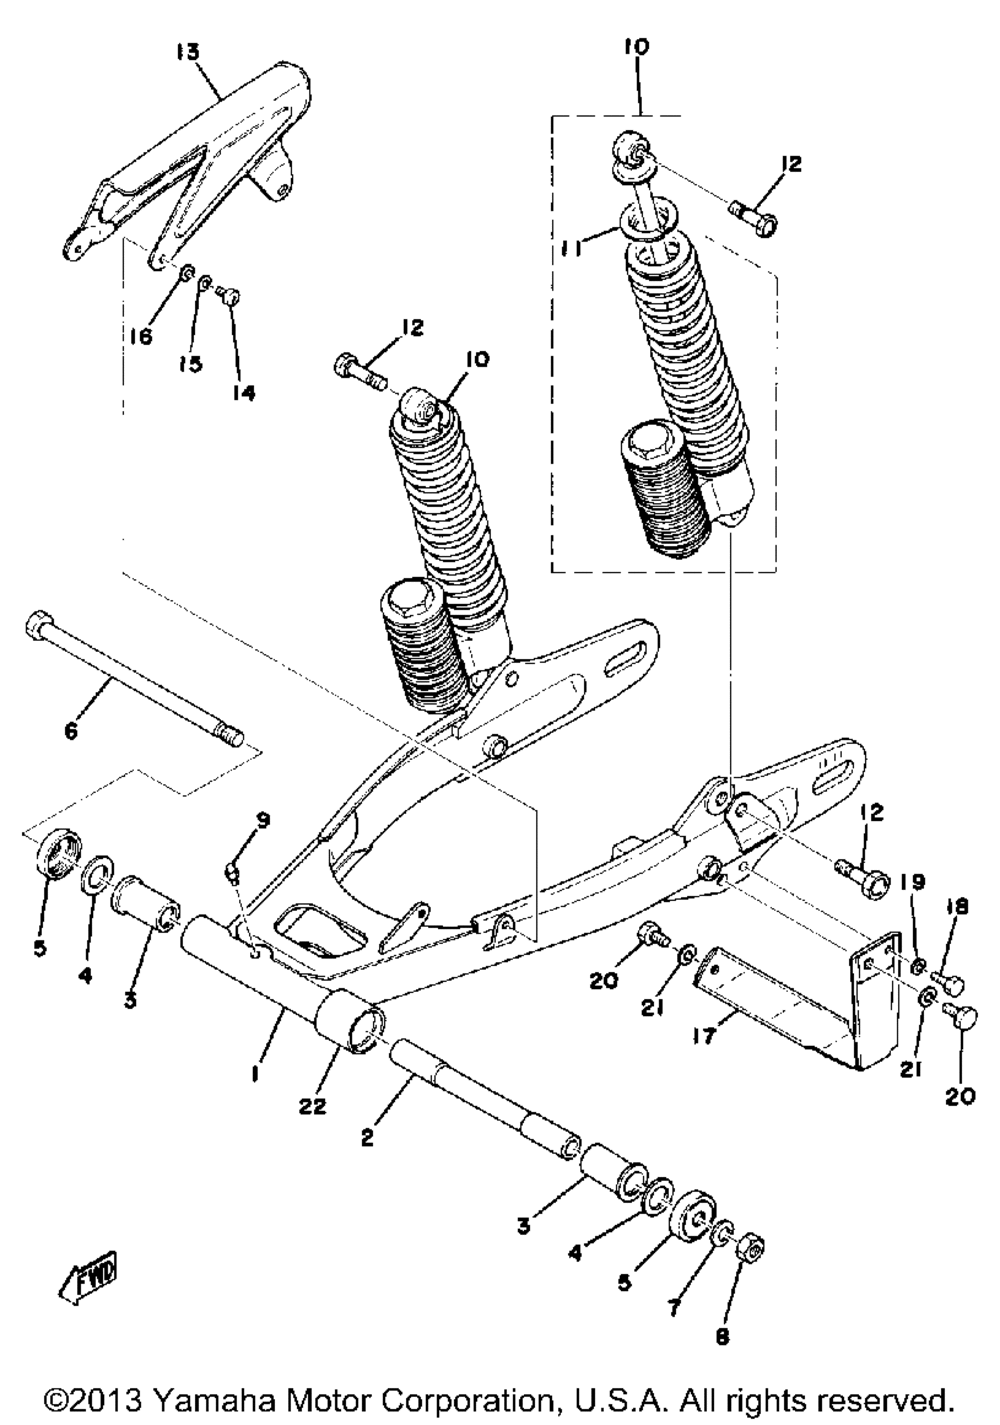 Swing arm-rear shocks-chain case